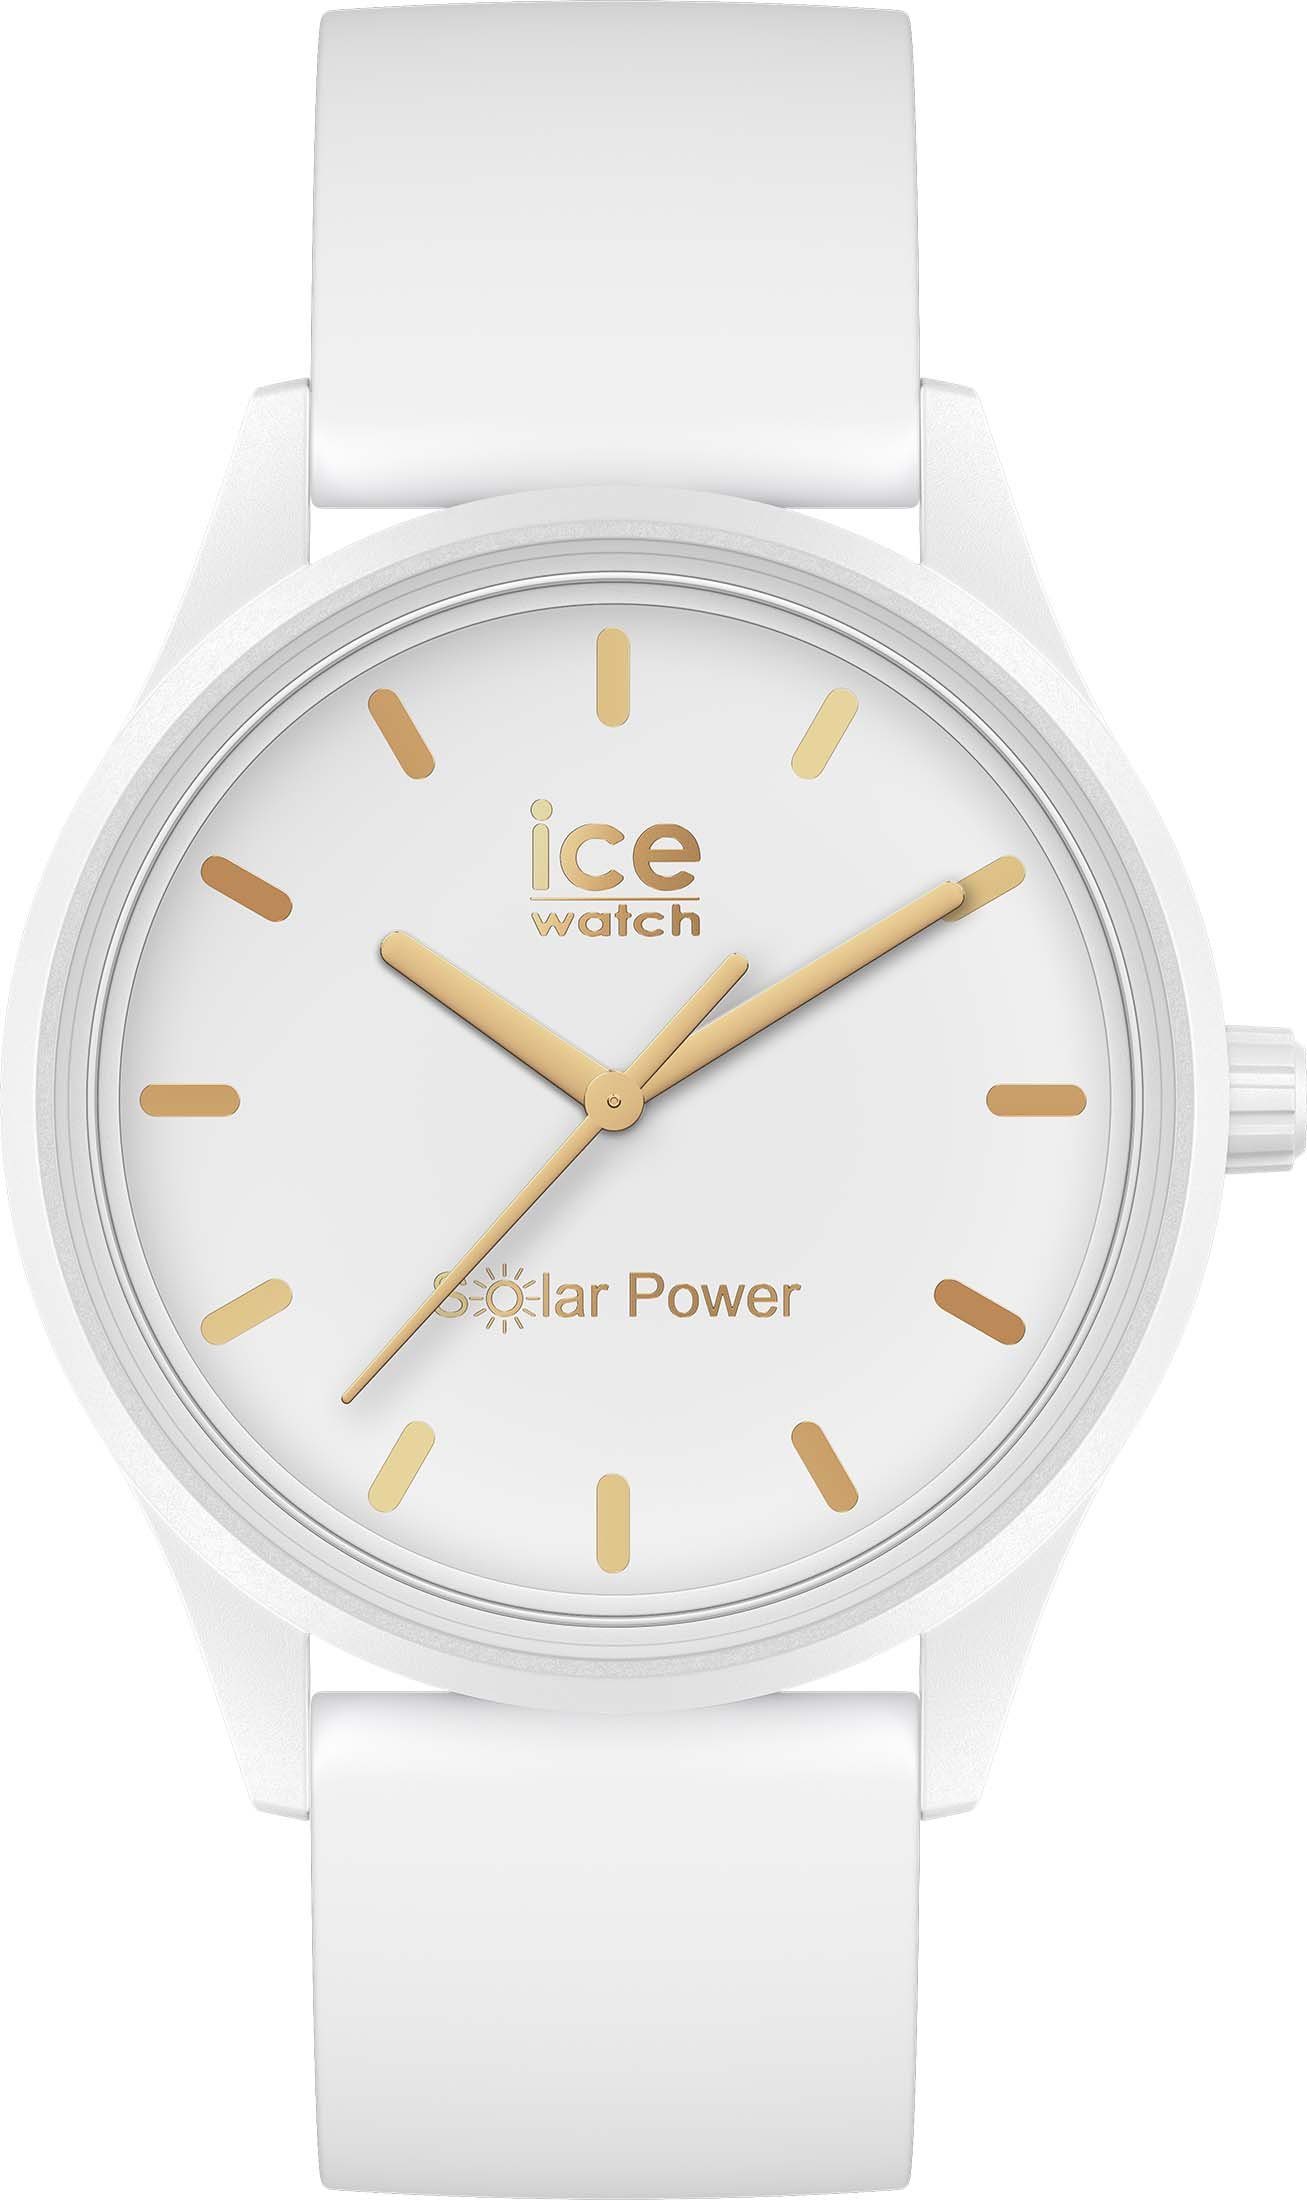 weiß gold power-White ICE Solaruhr ice-watch 020301 M, Solar